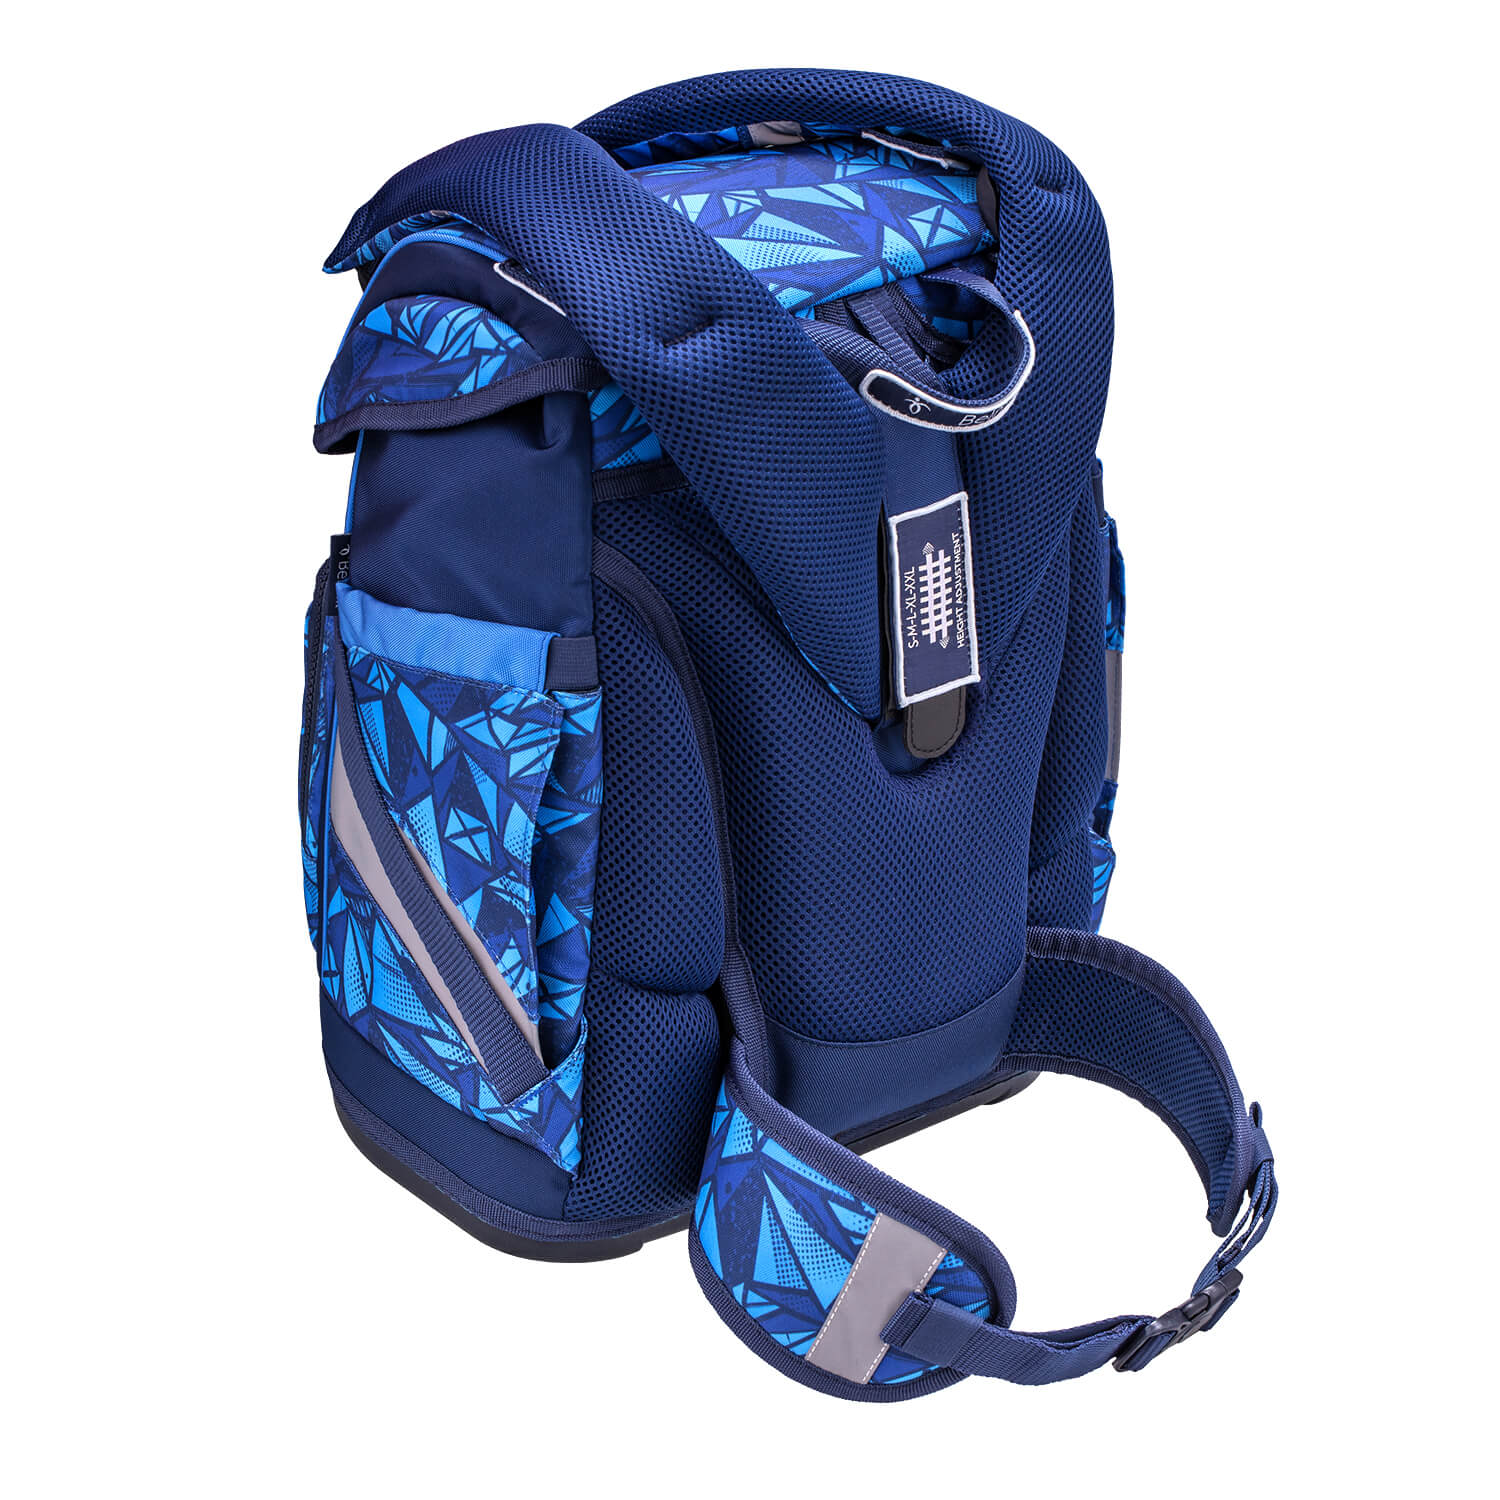 Smarty Plus Glacier Blue Schoolbag set 5pcs.